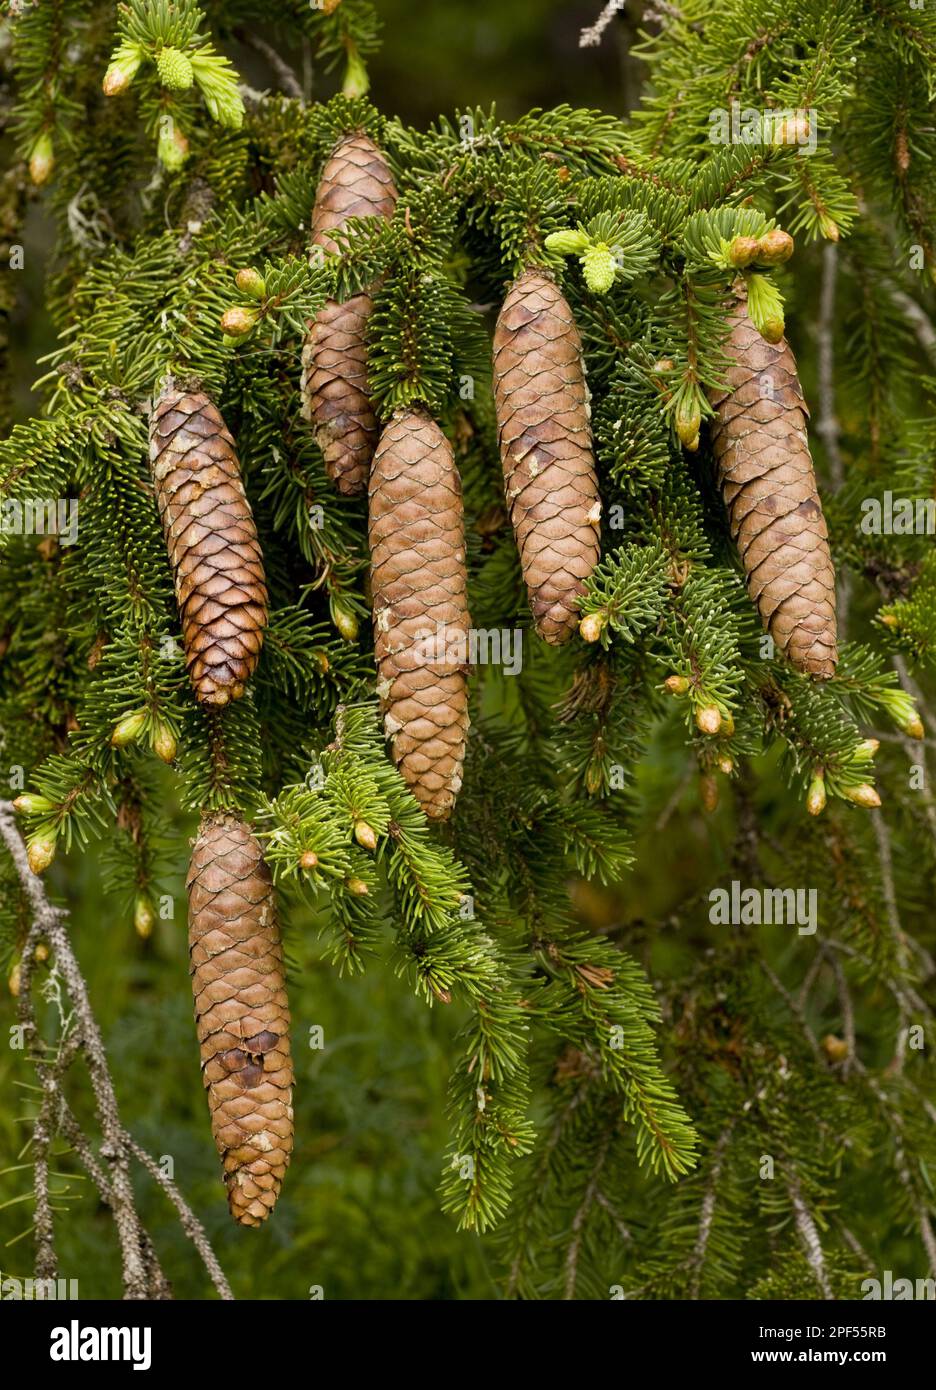 Norway spruce, Norway spruce, Norway spruce, Norway spruce, Norway spruce, Norway spruce, Norway spruce, Norway spruce, Norway spruce, Norway spruce Stock Photo